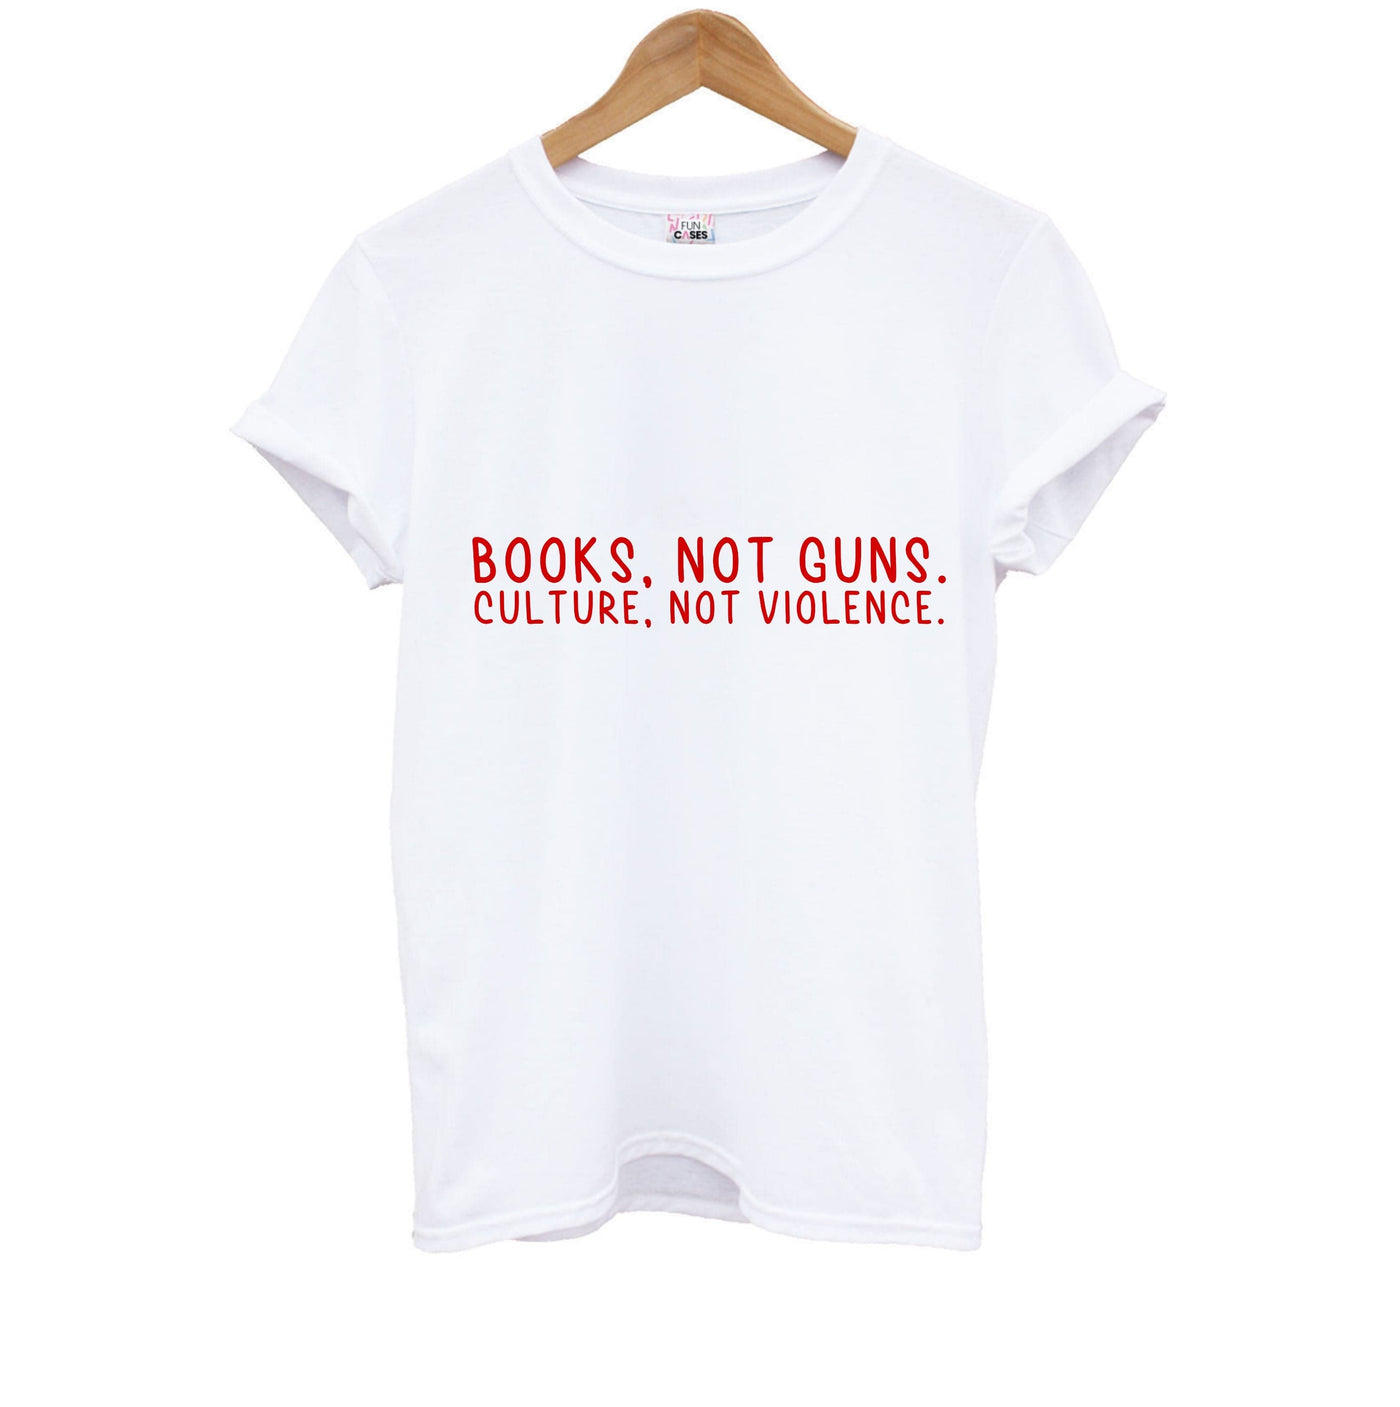 Books, Not Guns - TV Quotes Kids T-Shirt